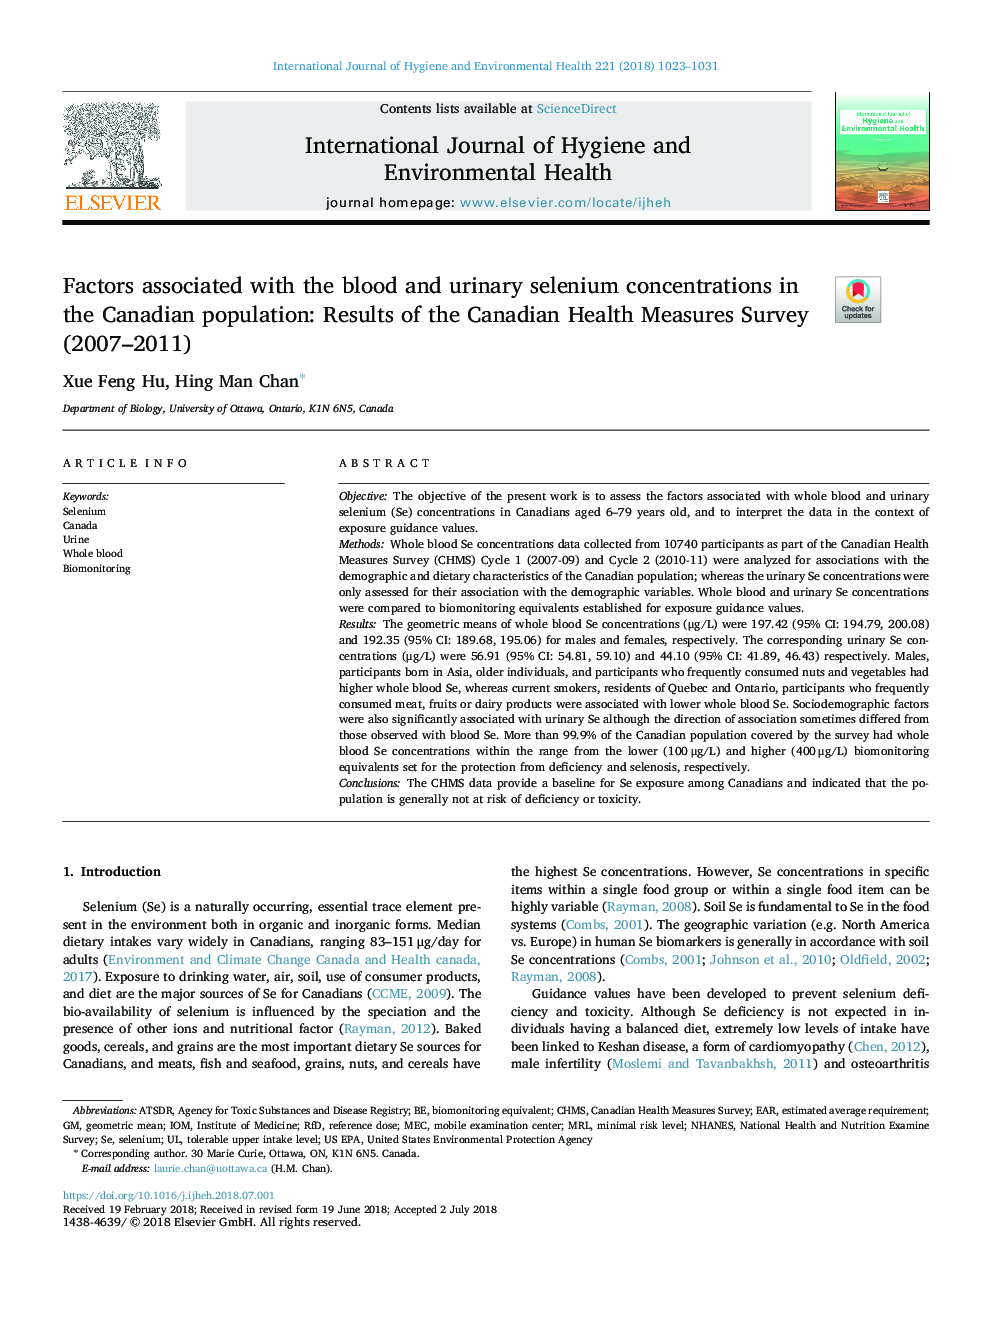 عوامل مرتبط با غلظت سلنیم خون و ادرار در جمعیت کانادایی: نتایج مراقبت های بهداشتی کانادایی (2007-2011) 